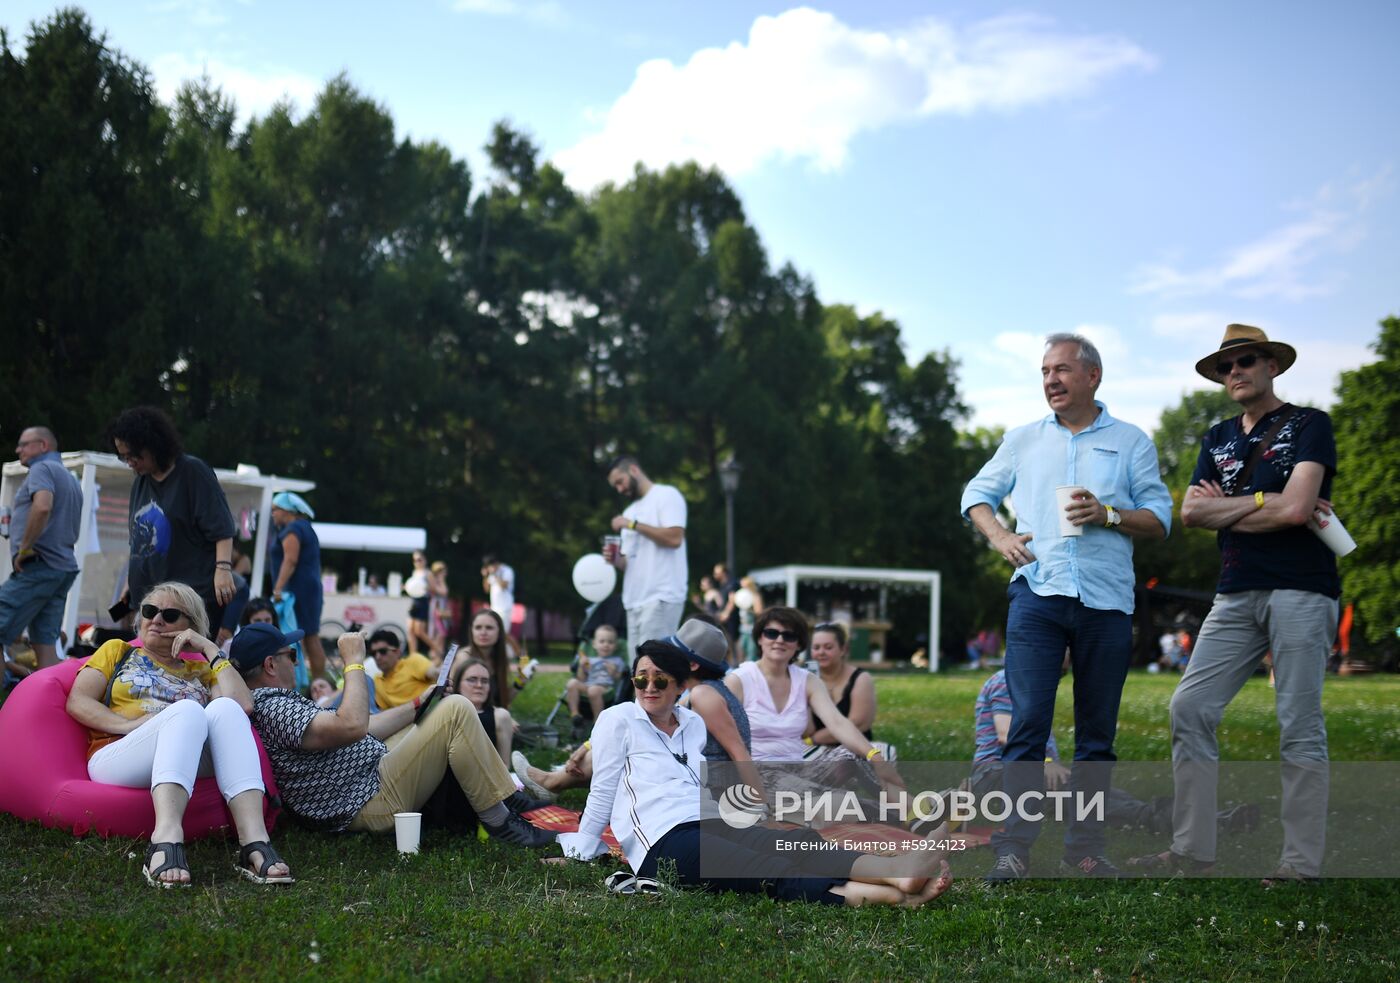 Международный музыкальный фестиваль "Усадьба Jazz" в Москве